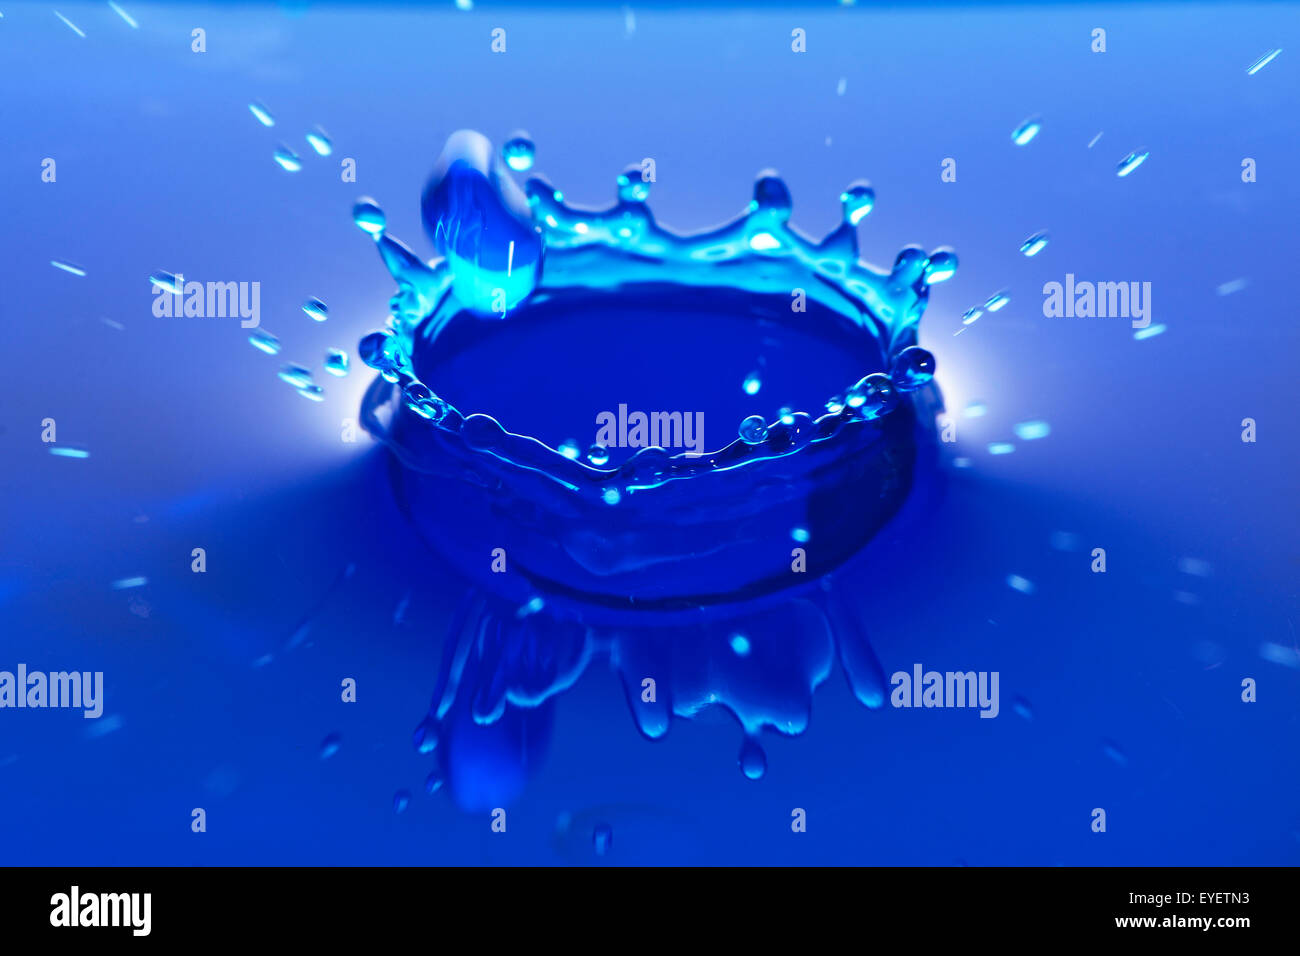 Colore blu di goccioline di acqua, fresco di sfondo abstract Foto Stock